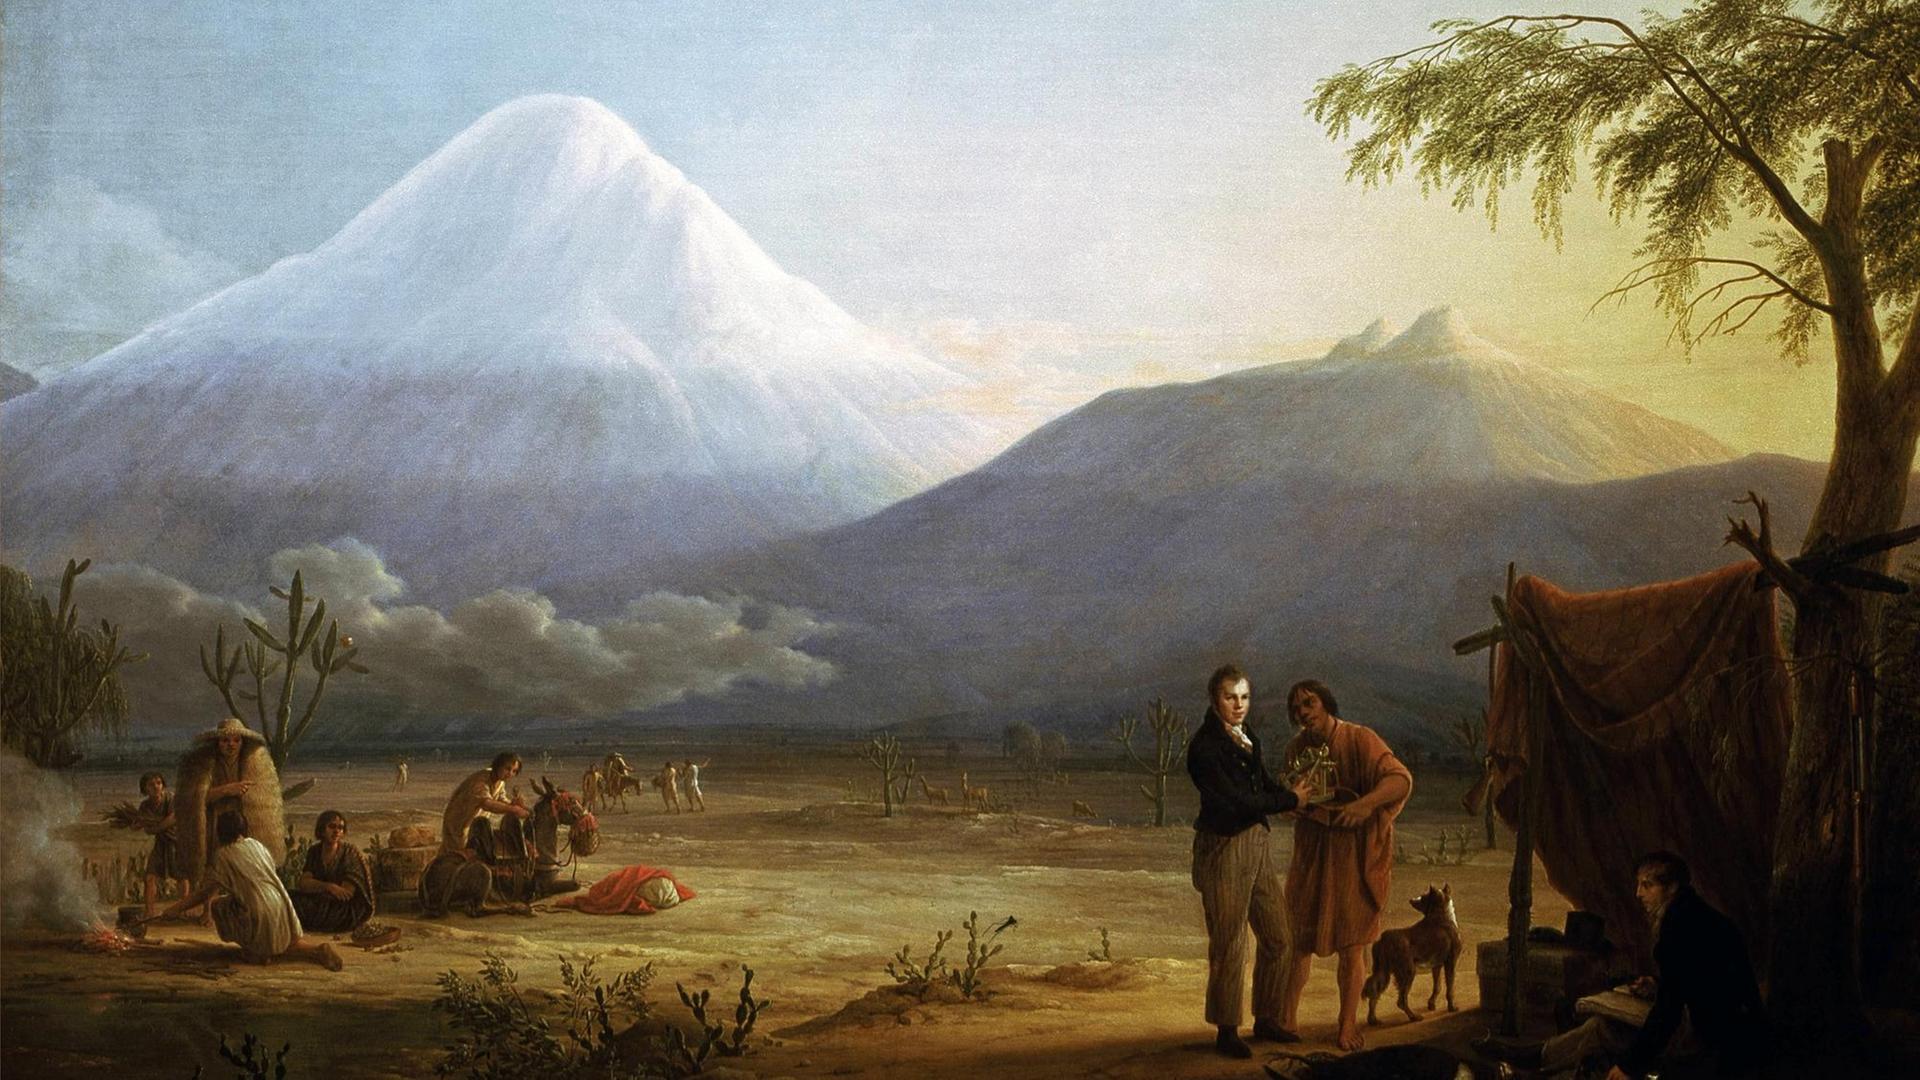 Das Gemälde zeigt Alexander von Humboldt, Naturforscher und Geograph mit dem französischen Arzt und Botaniker Aimé Bonpland im Tal von Tapia am Fuß des Vulkans Chimborazo. Aus dem Jahr 1810, gemalt von Friedrich Georg Weitsch (17581828). Öl auf Leinwand.